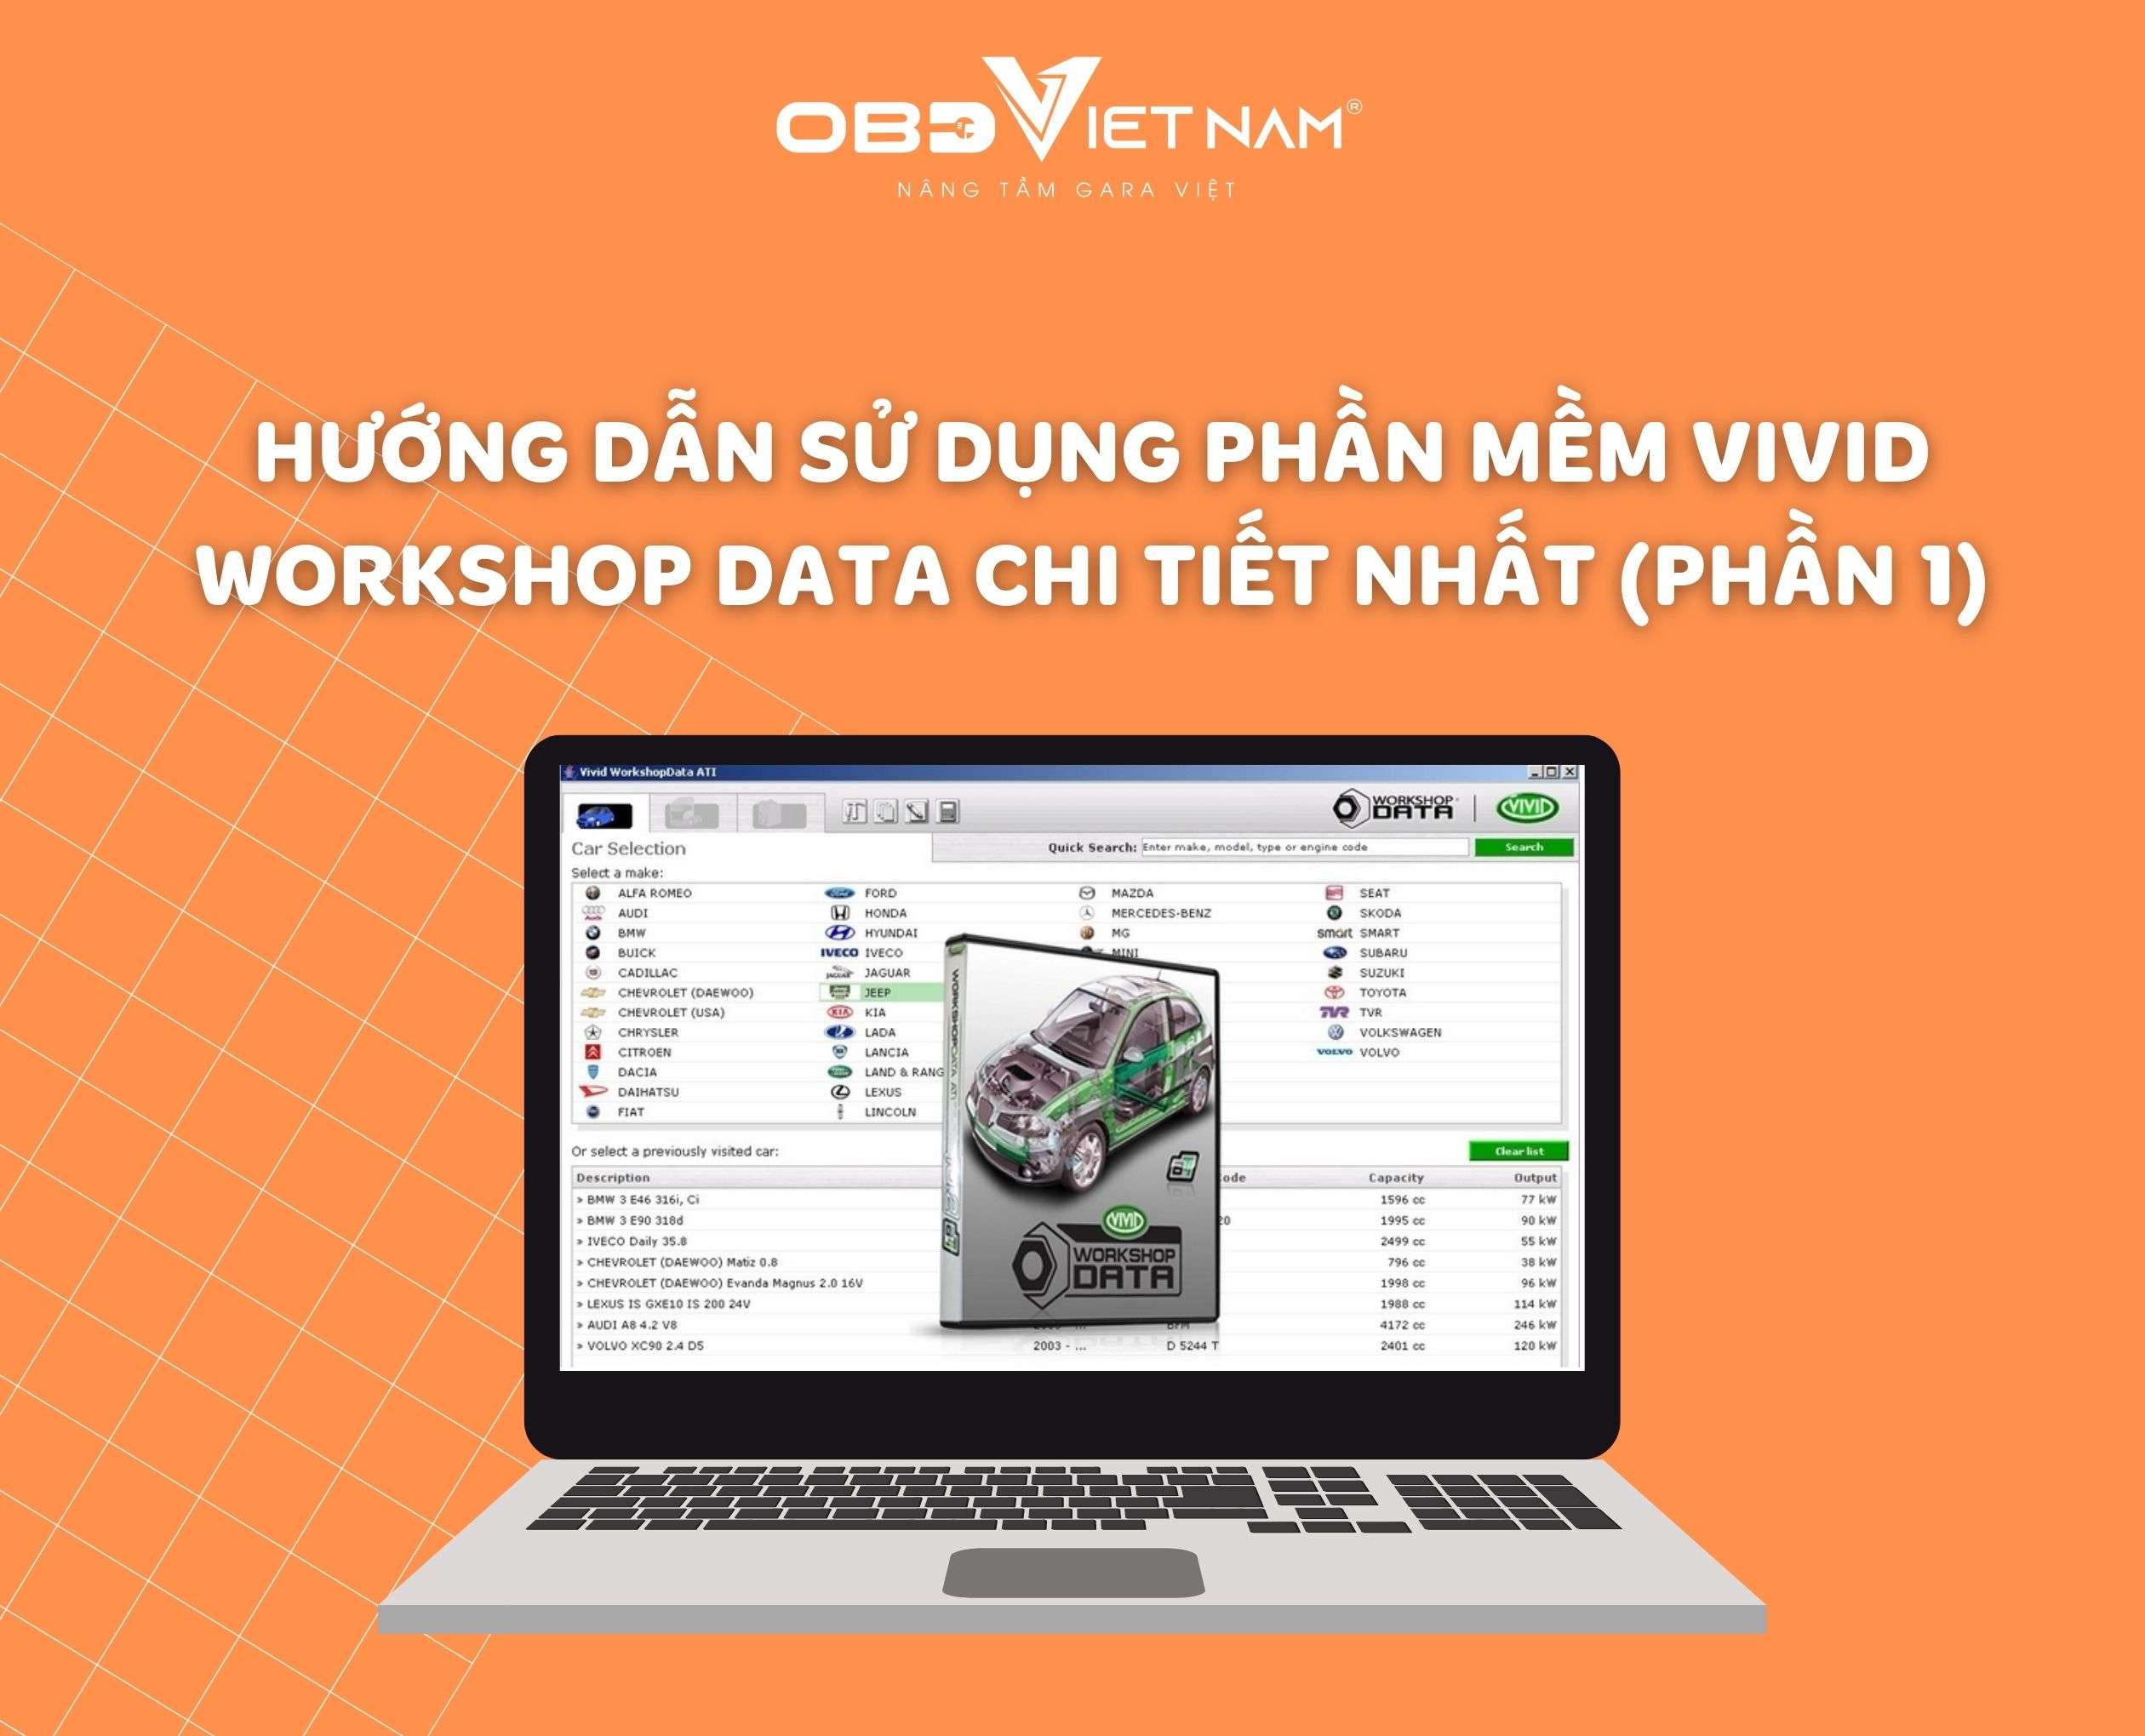 huong-dan-su-dung-phan-mem-vivid-workshop-data-chi-tiet-nhat-phan-1-obd-viet-nam